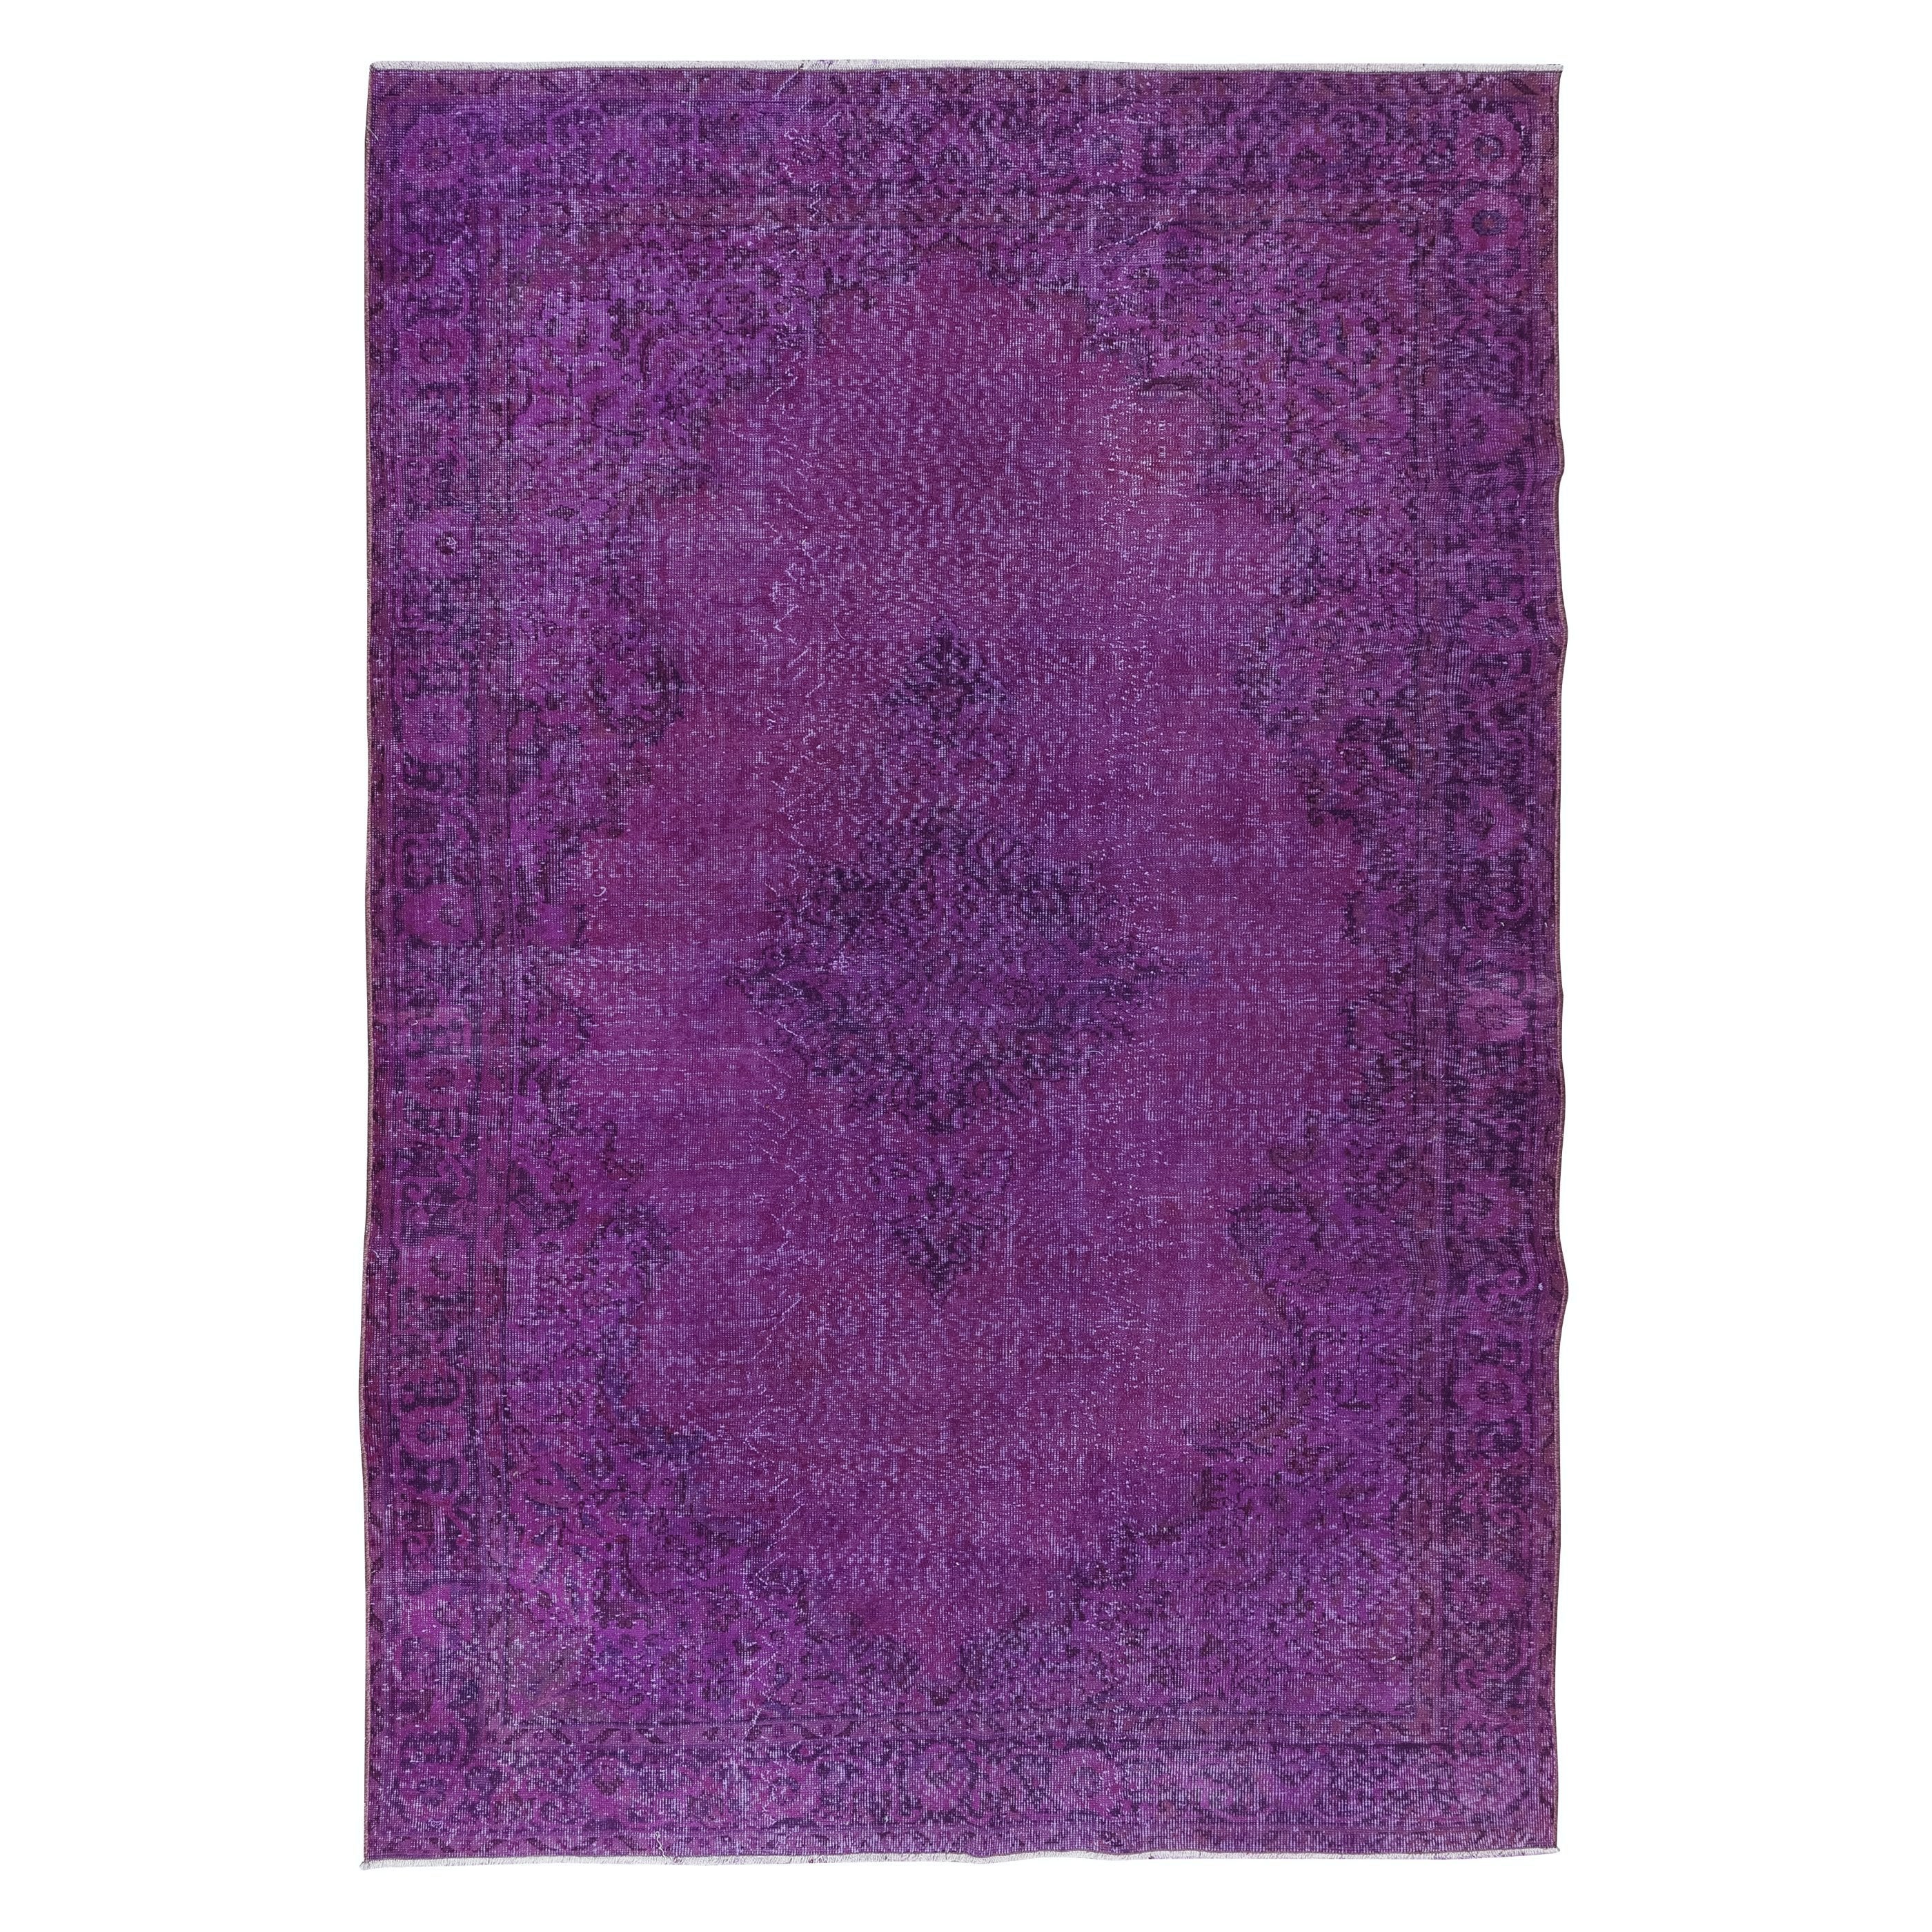 7x10 Ft Handmade Turkish Purple Area Rug, idéal pour les intérieurs Modernity